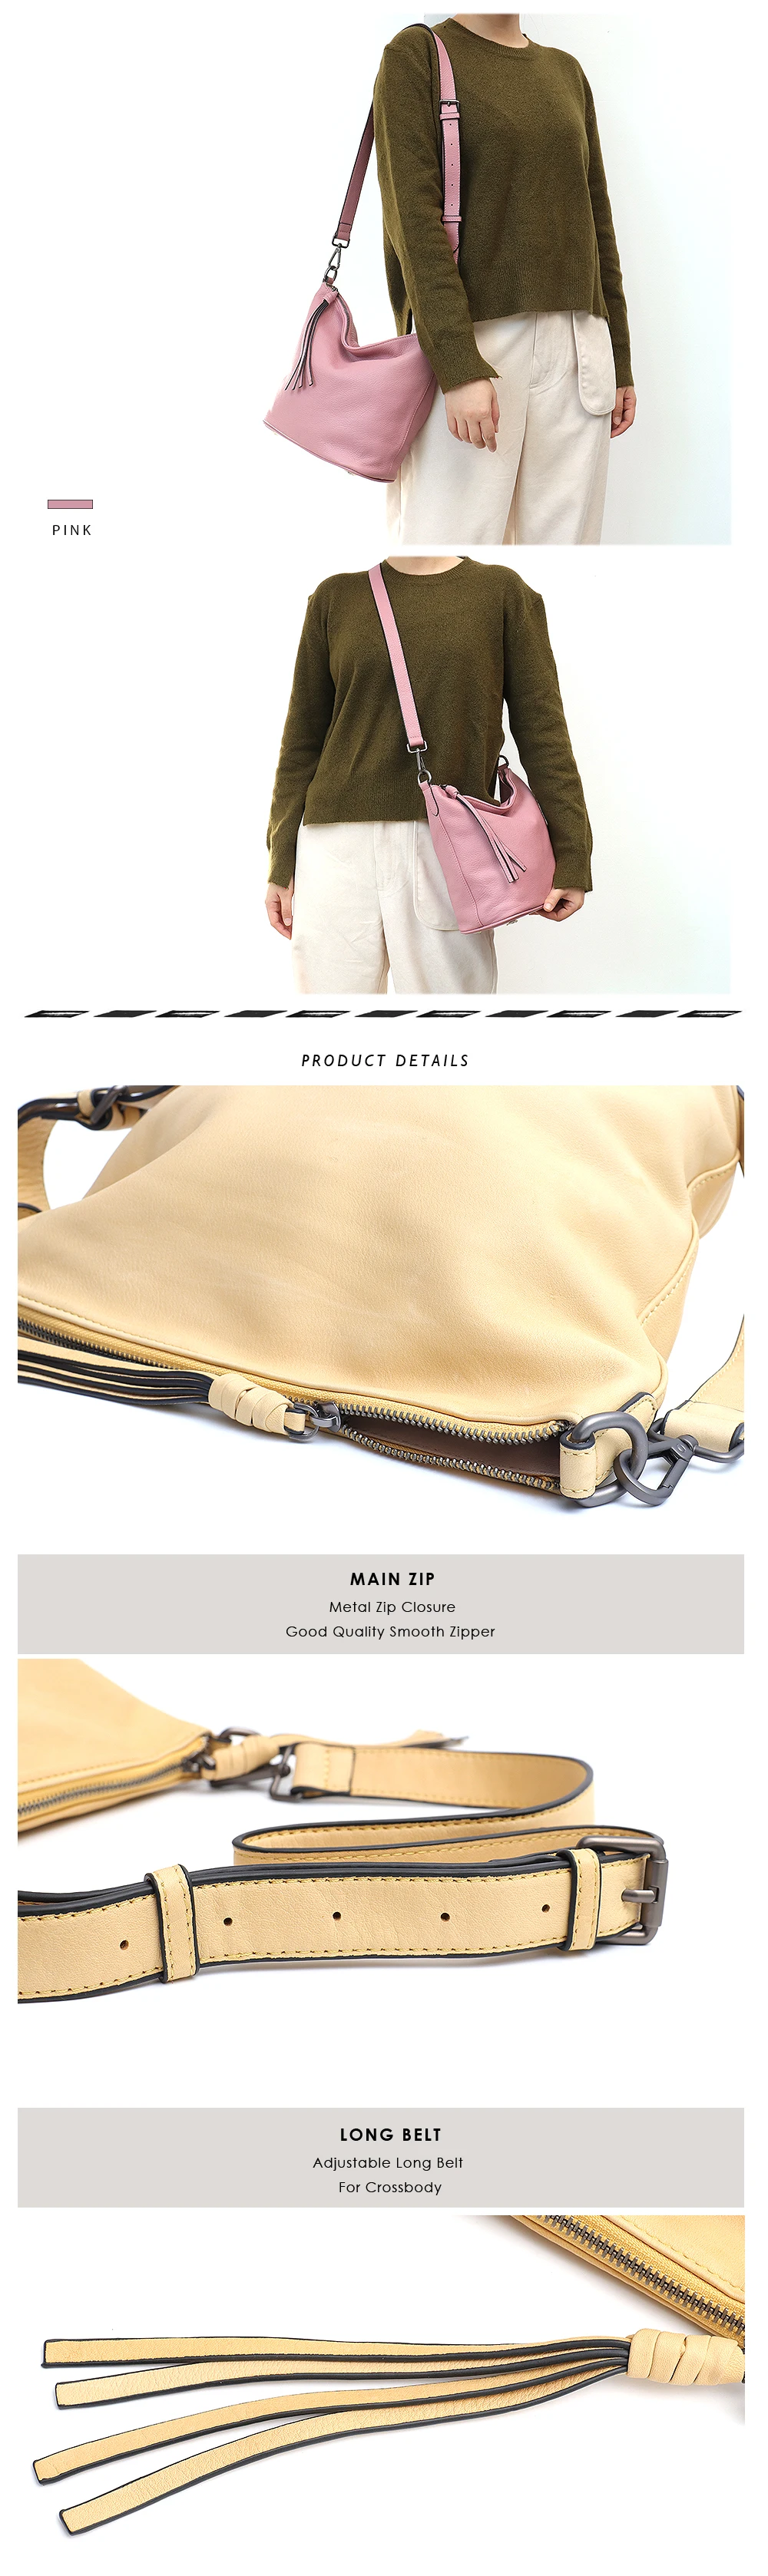 SC модная цветная сумка через плечо Macaron, сумка-мешок из натуральной кожи для девушек, мягкая кожаная сумка-хобо с кисточками, женская сумка-мессенджер